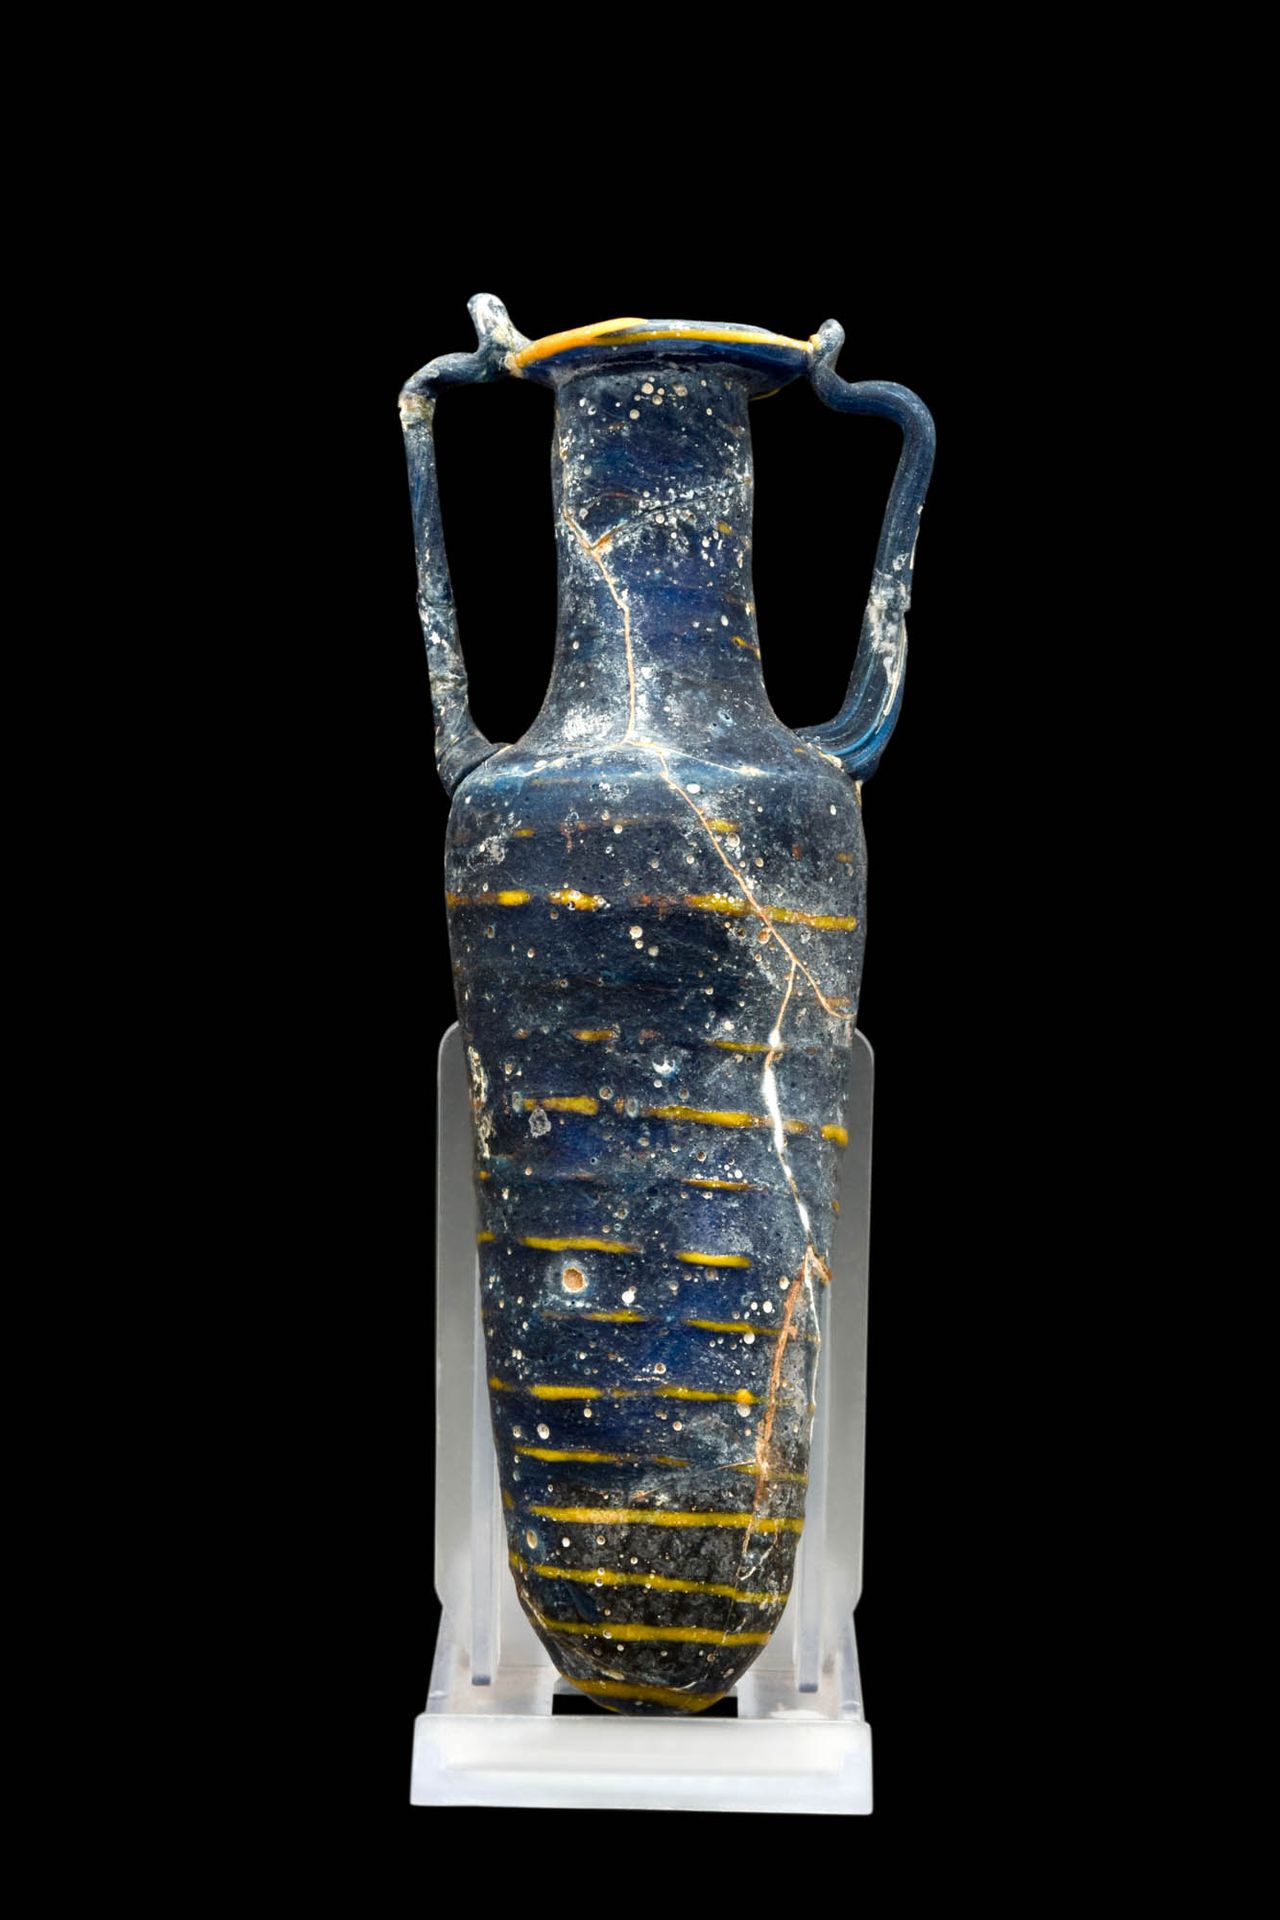 GREEK CORE-FORMED GLASS AMPHORISKOS 约公元前 200 - 100 年。约公元前 200-100 年。
这是一件希腊化时期的核&hellip;